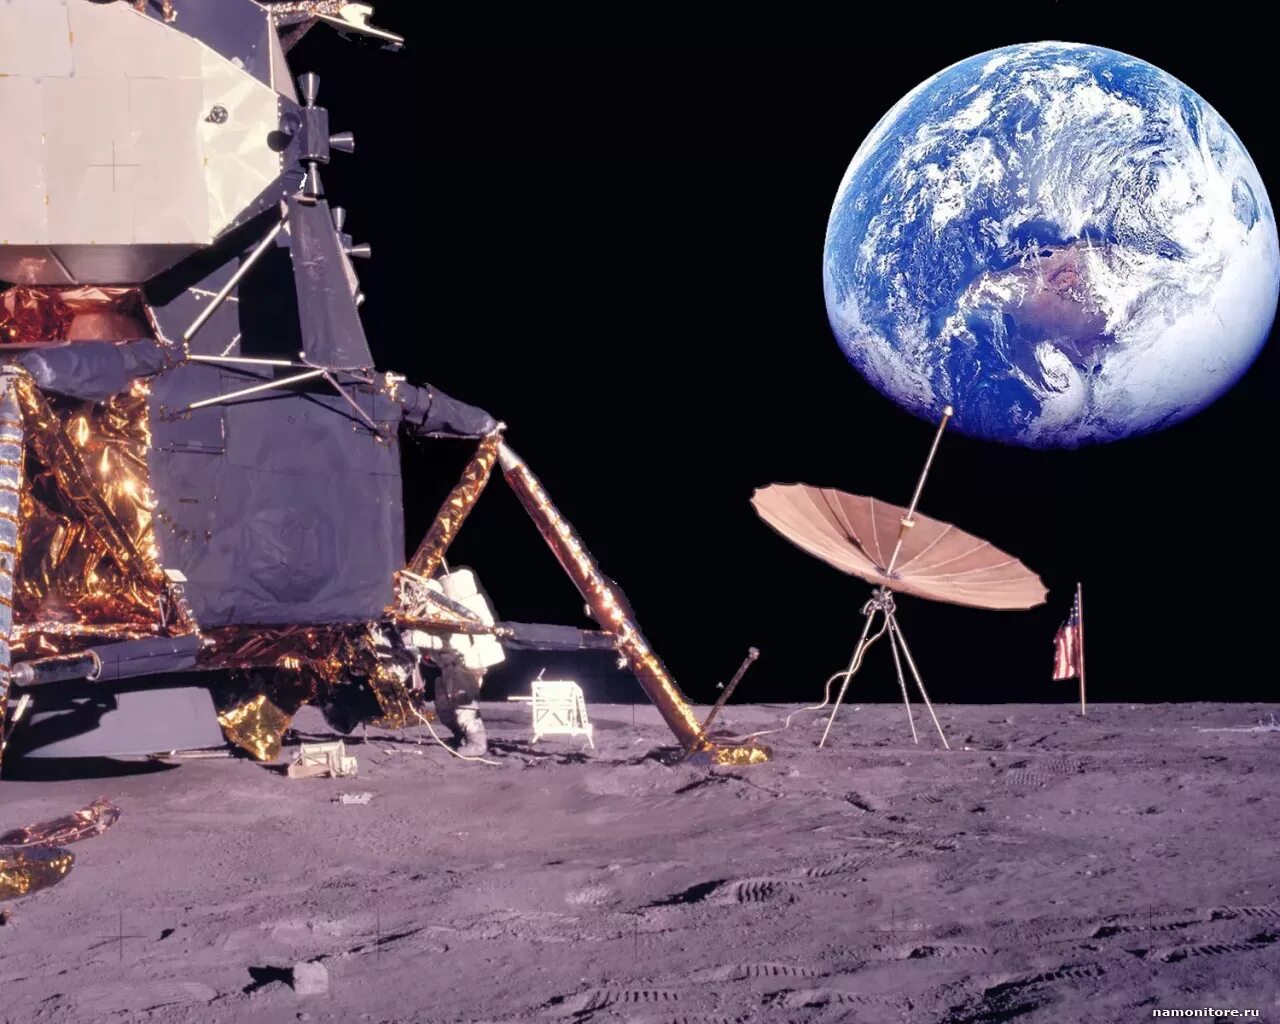 Twelve moons. Аполлон 12 на Луне. Исследование космоса. Космические исследования. Космические аппараты на Луне.